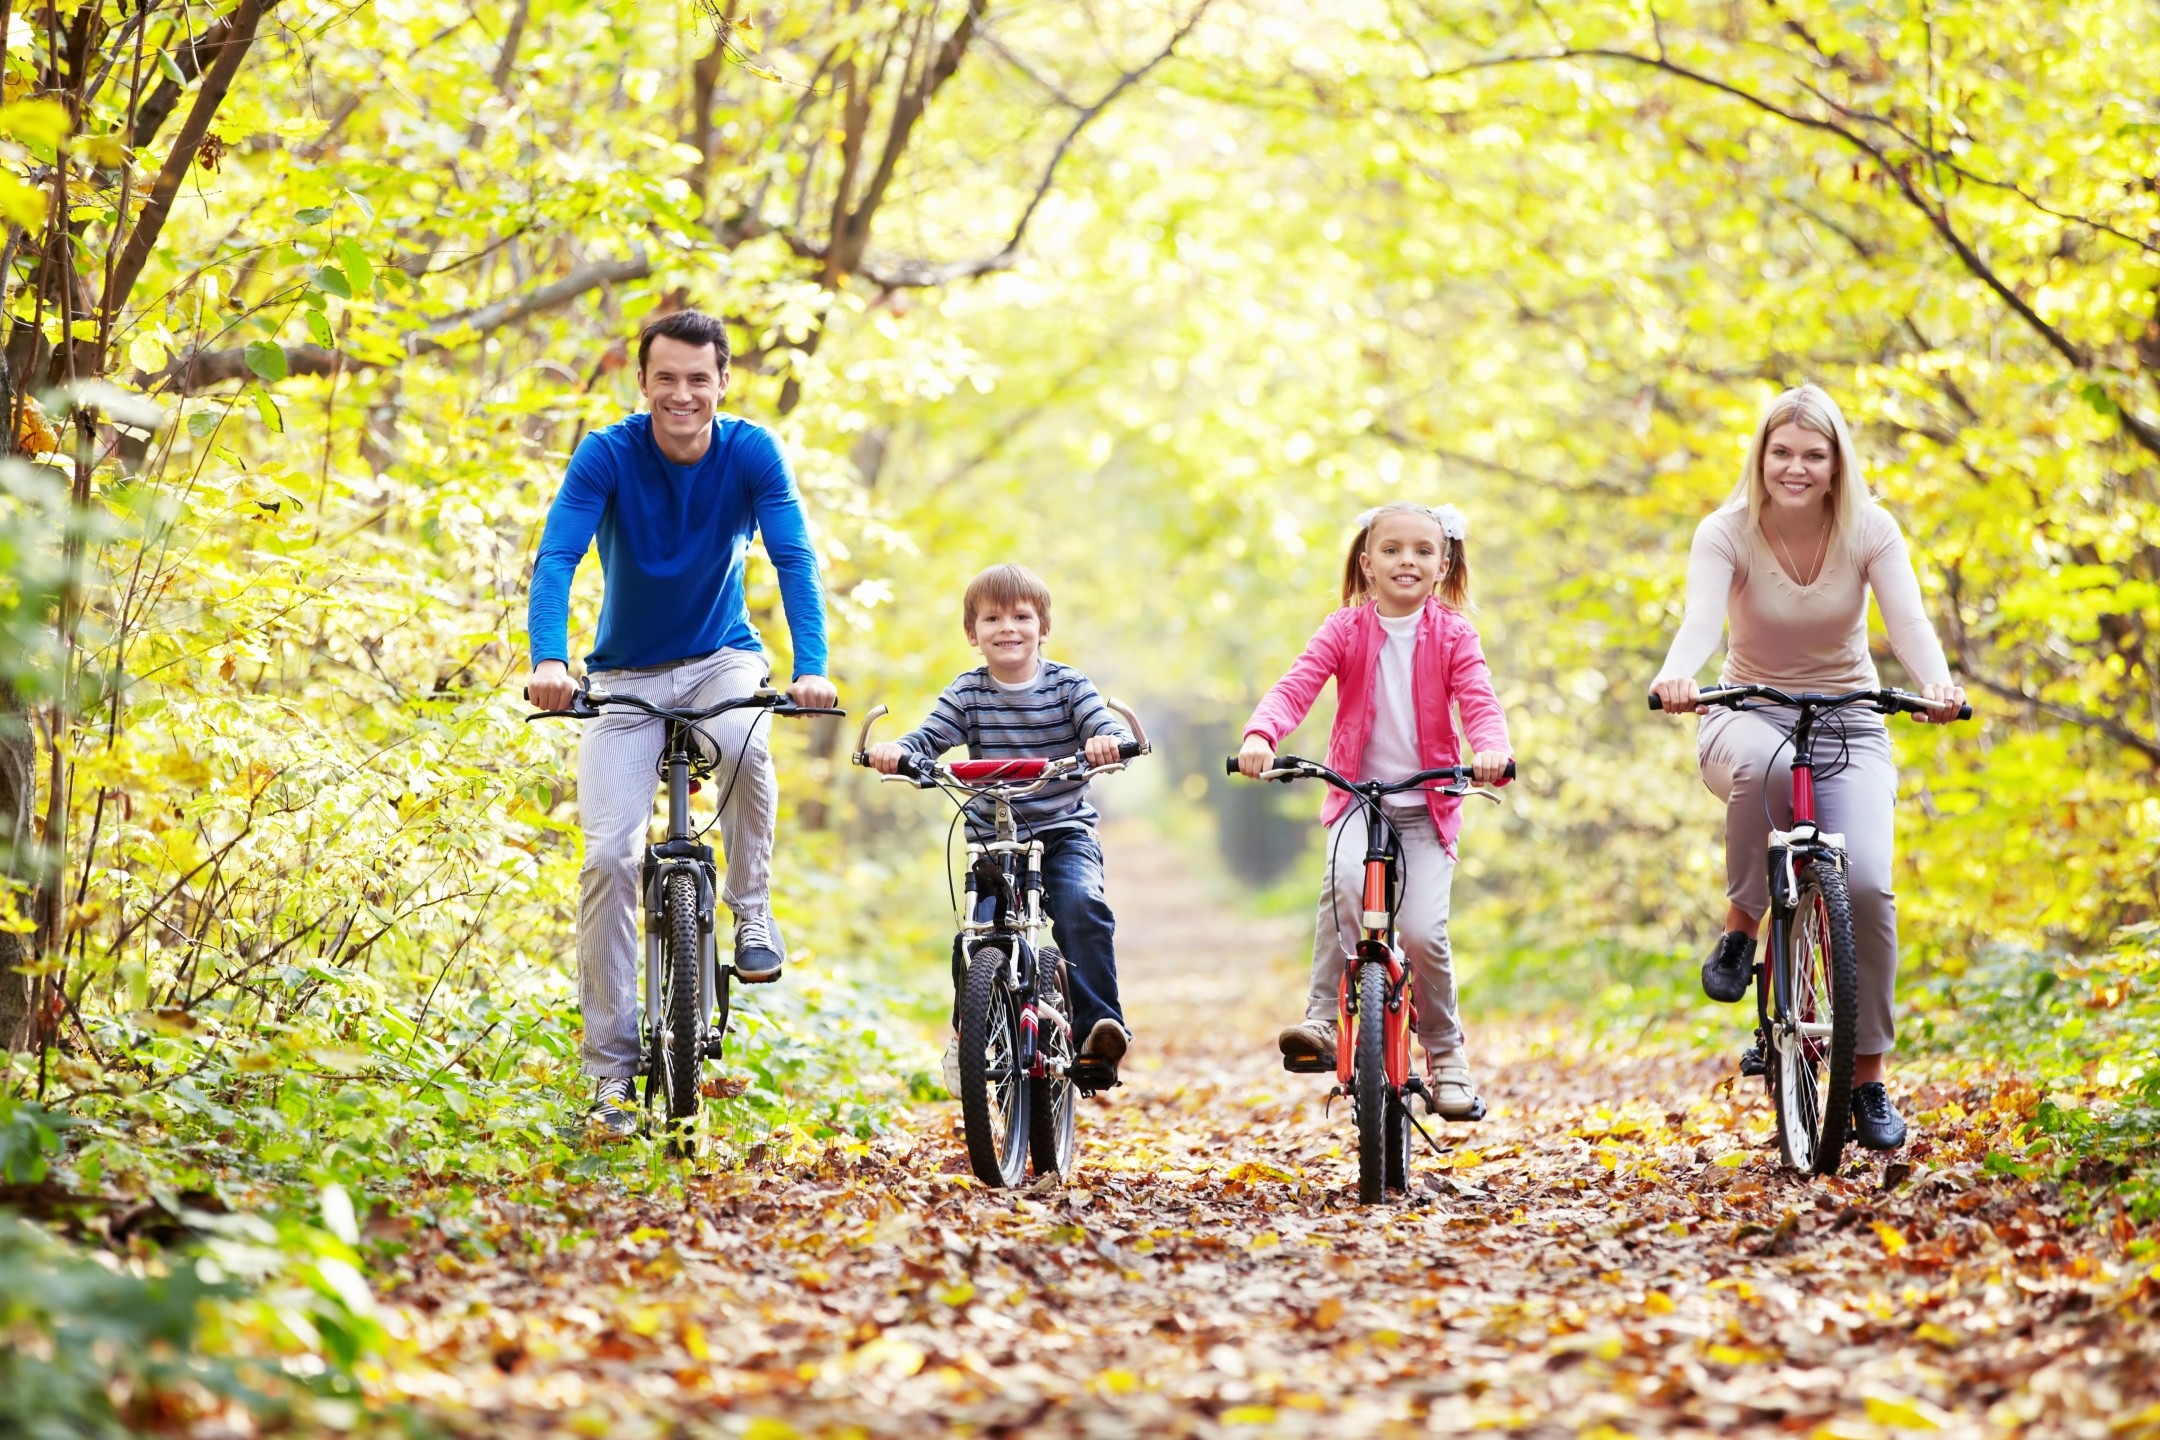 Тема прогулки с детьми. Семья на велосипедах. Семья на прогулке. Прогулка на природе. Активный образ жизни.